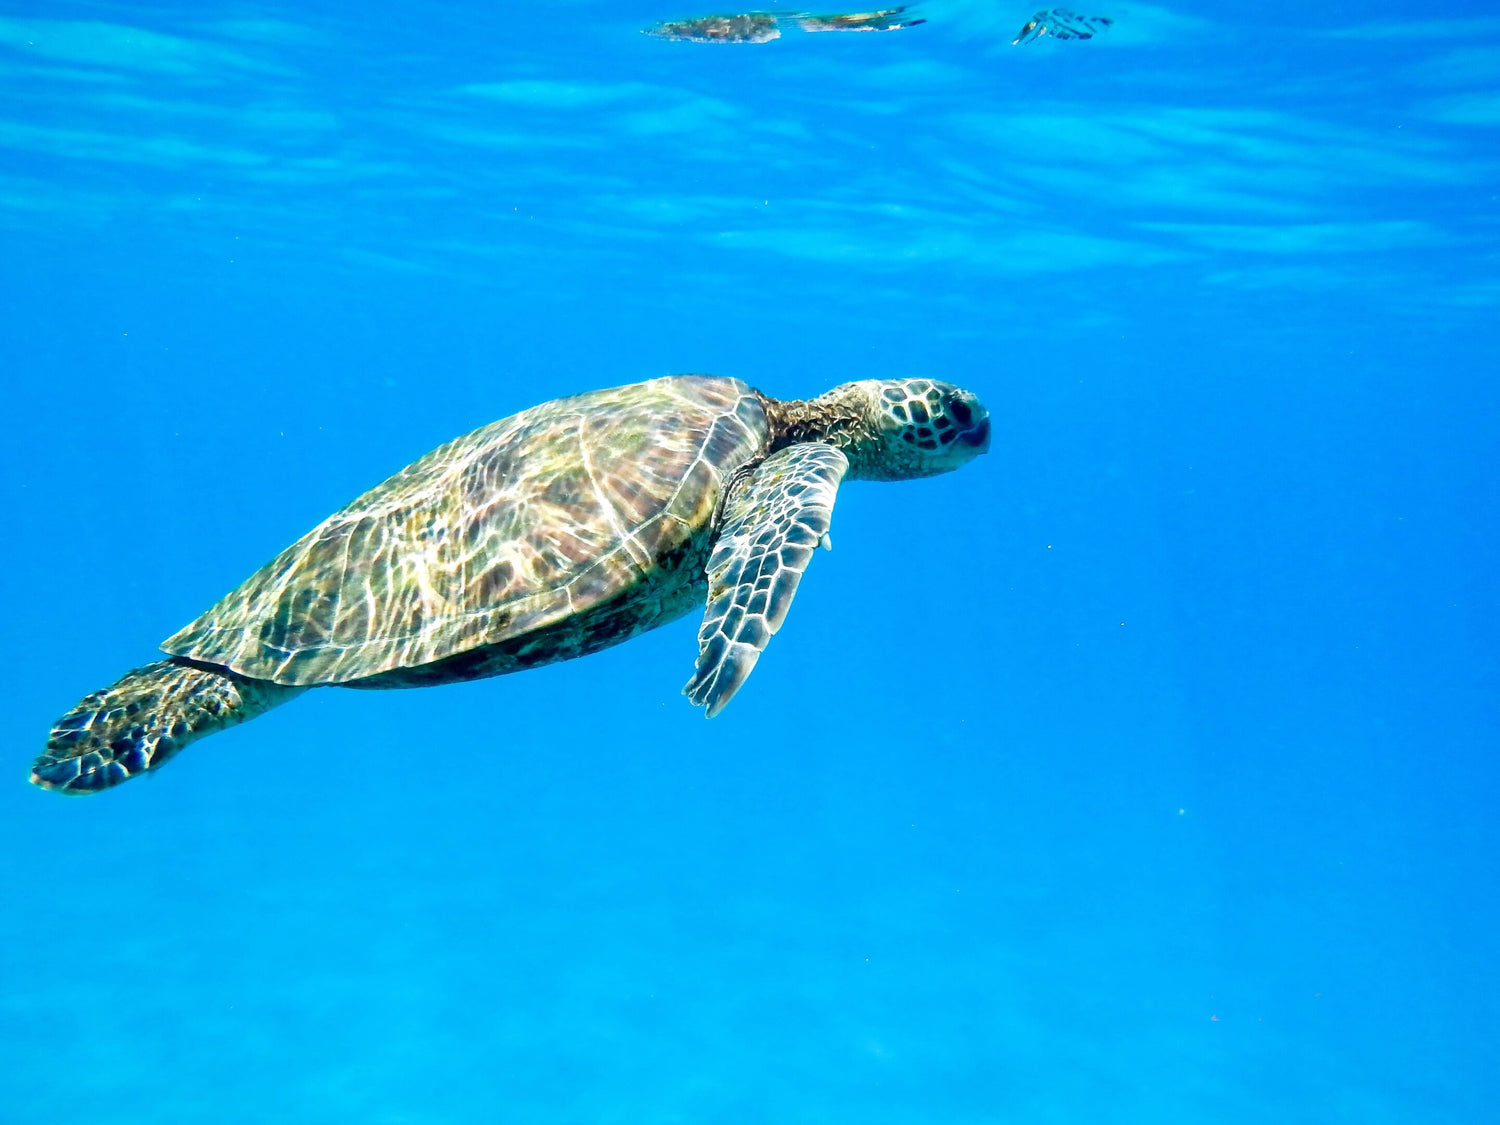 La photo montre une tortue marine nageant dans l'eau claire et bleue. La tortue est vue de côté, se déplaçant vers le haut à gauche de l'image. Elle a une carapace mouchetée de motifs bruns et verts et des nageoires qui semblent douces et souples. L'eau est d'un bleu profond et paisible, ce qui crée un contraste naturel avec la tortue.